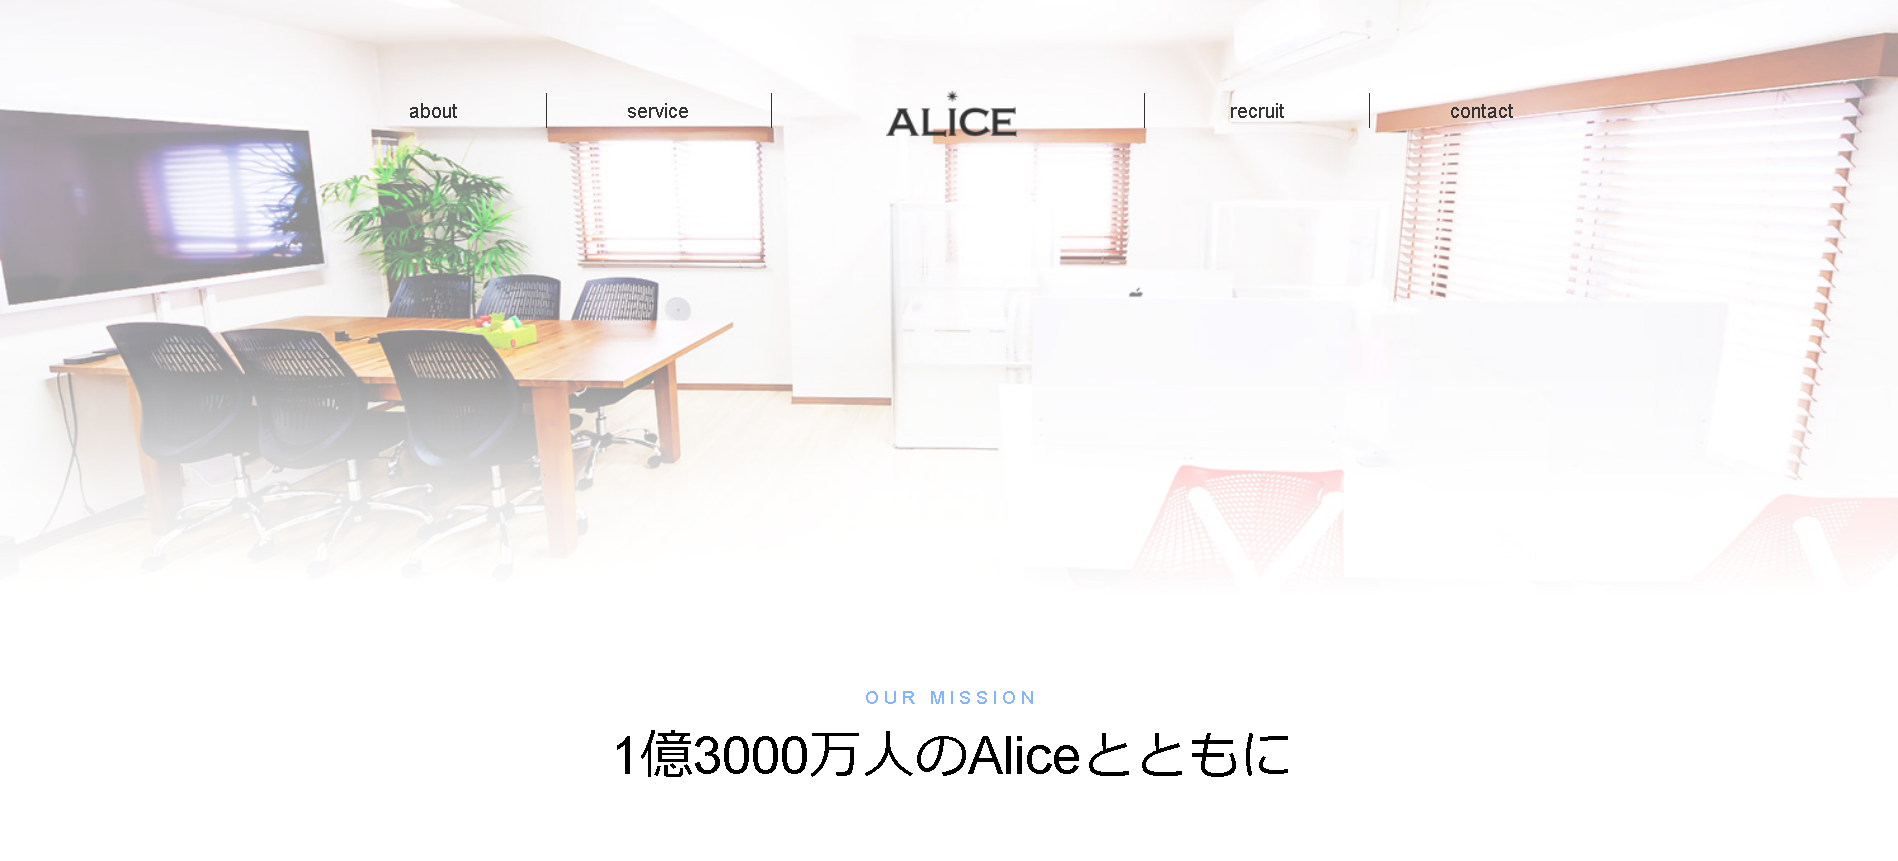 株式会社ALICEのALICEサービス